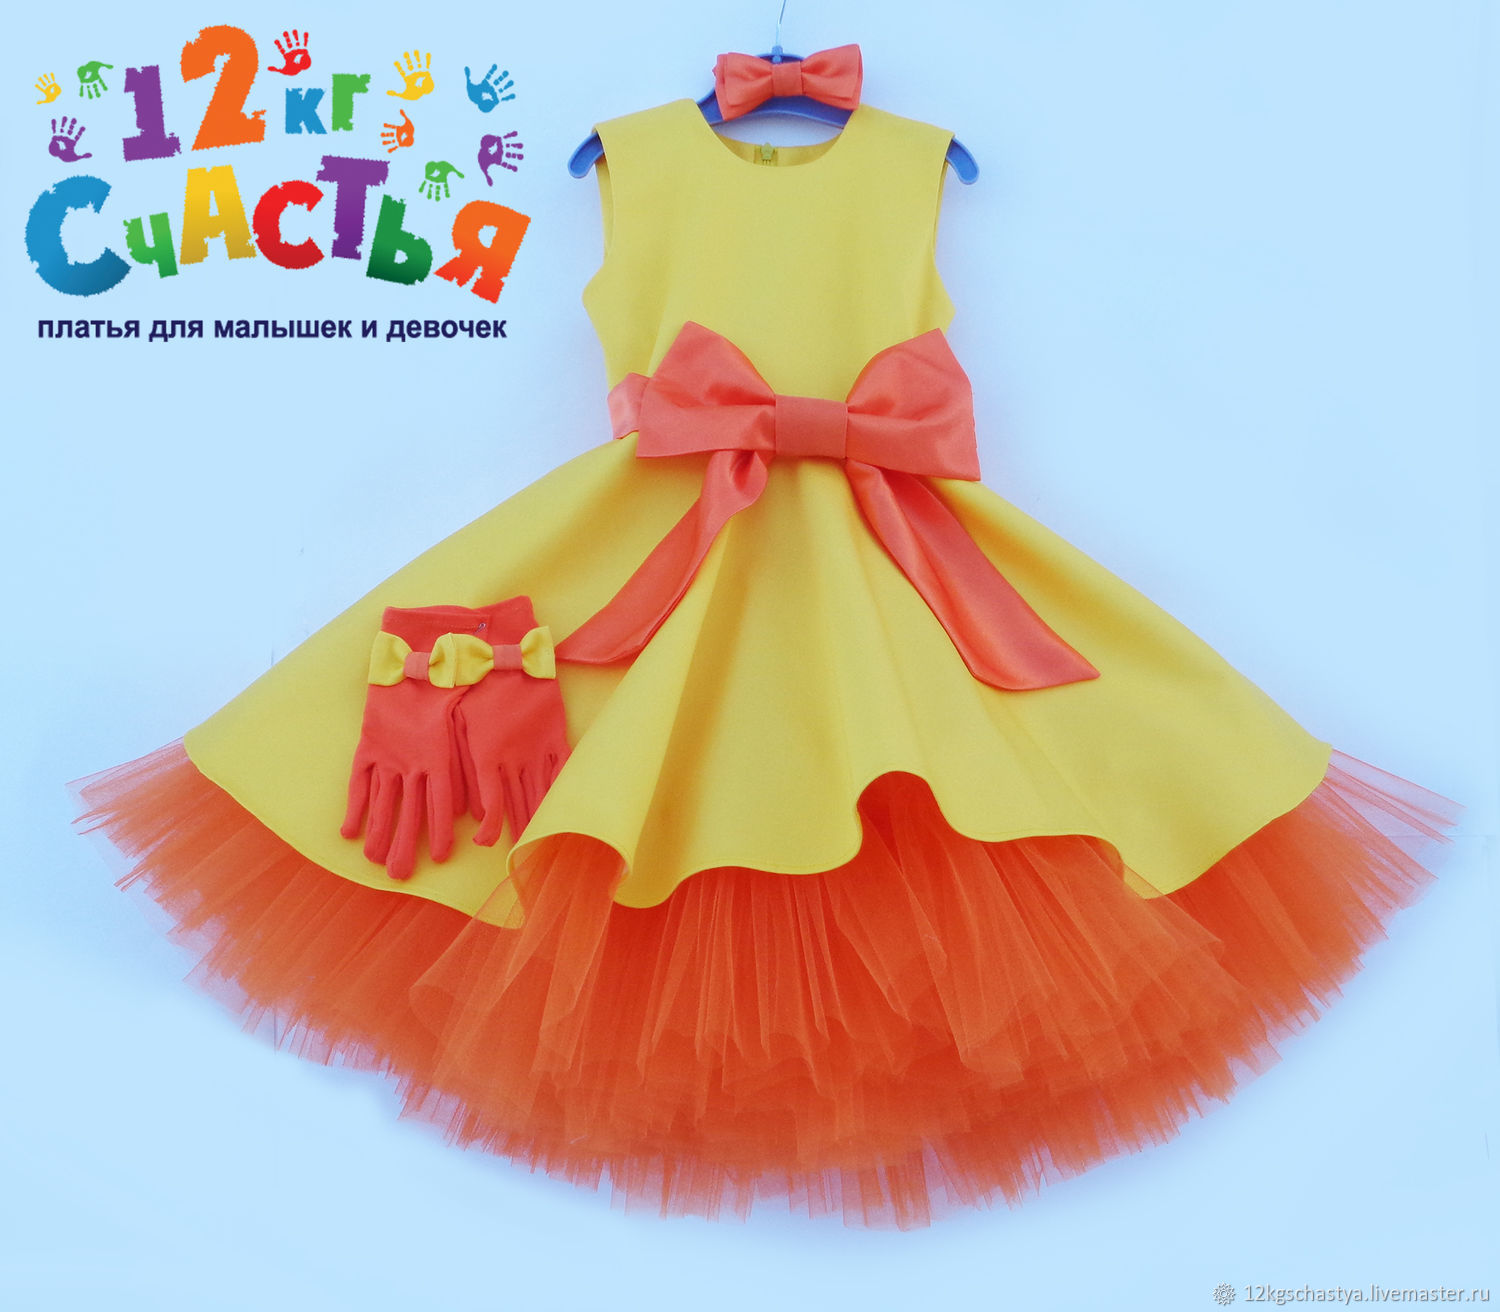 Детское оранжевое платье